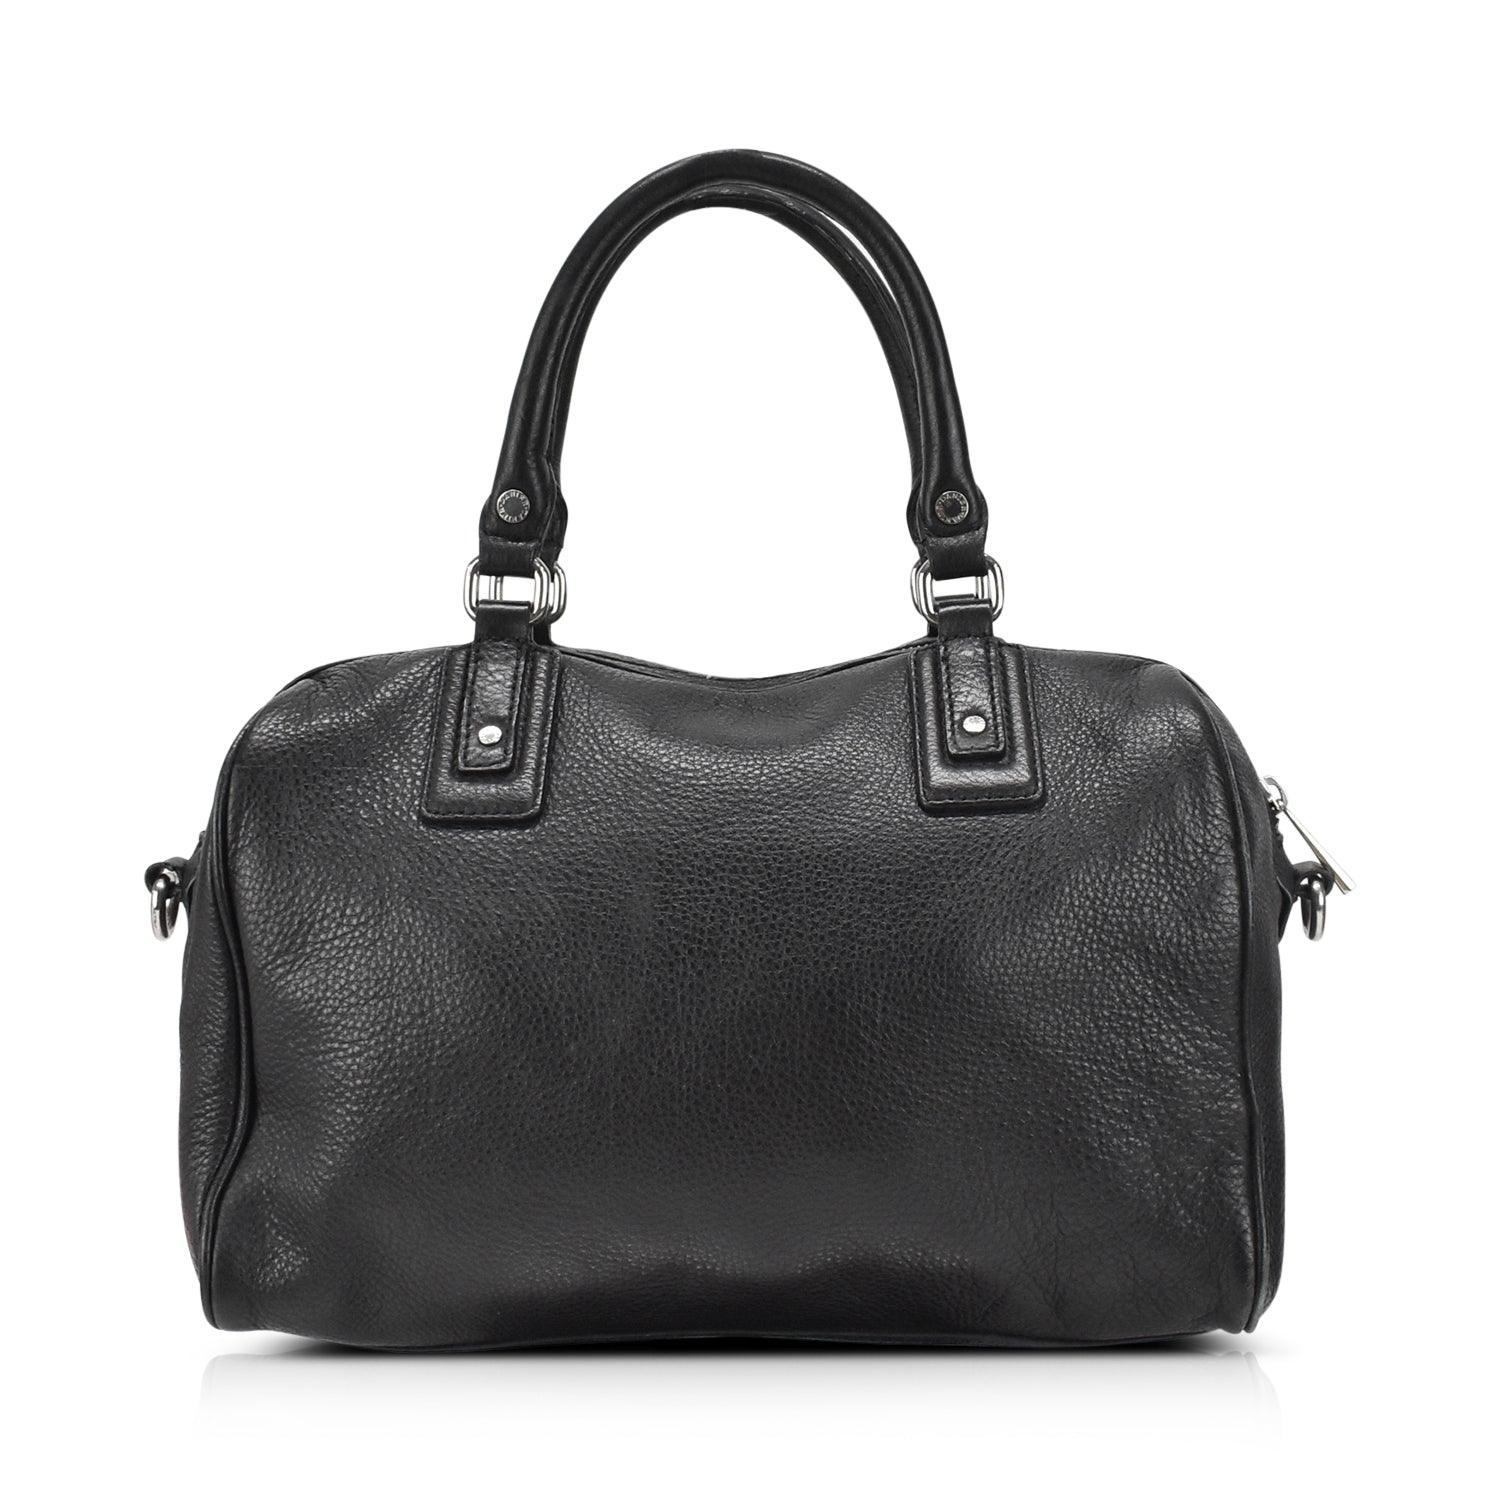 Danier Duffle Bag - Fashionably Yours